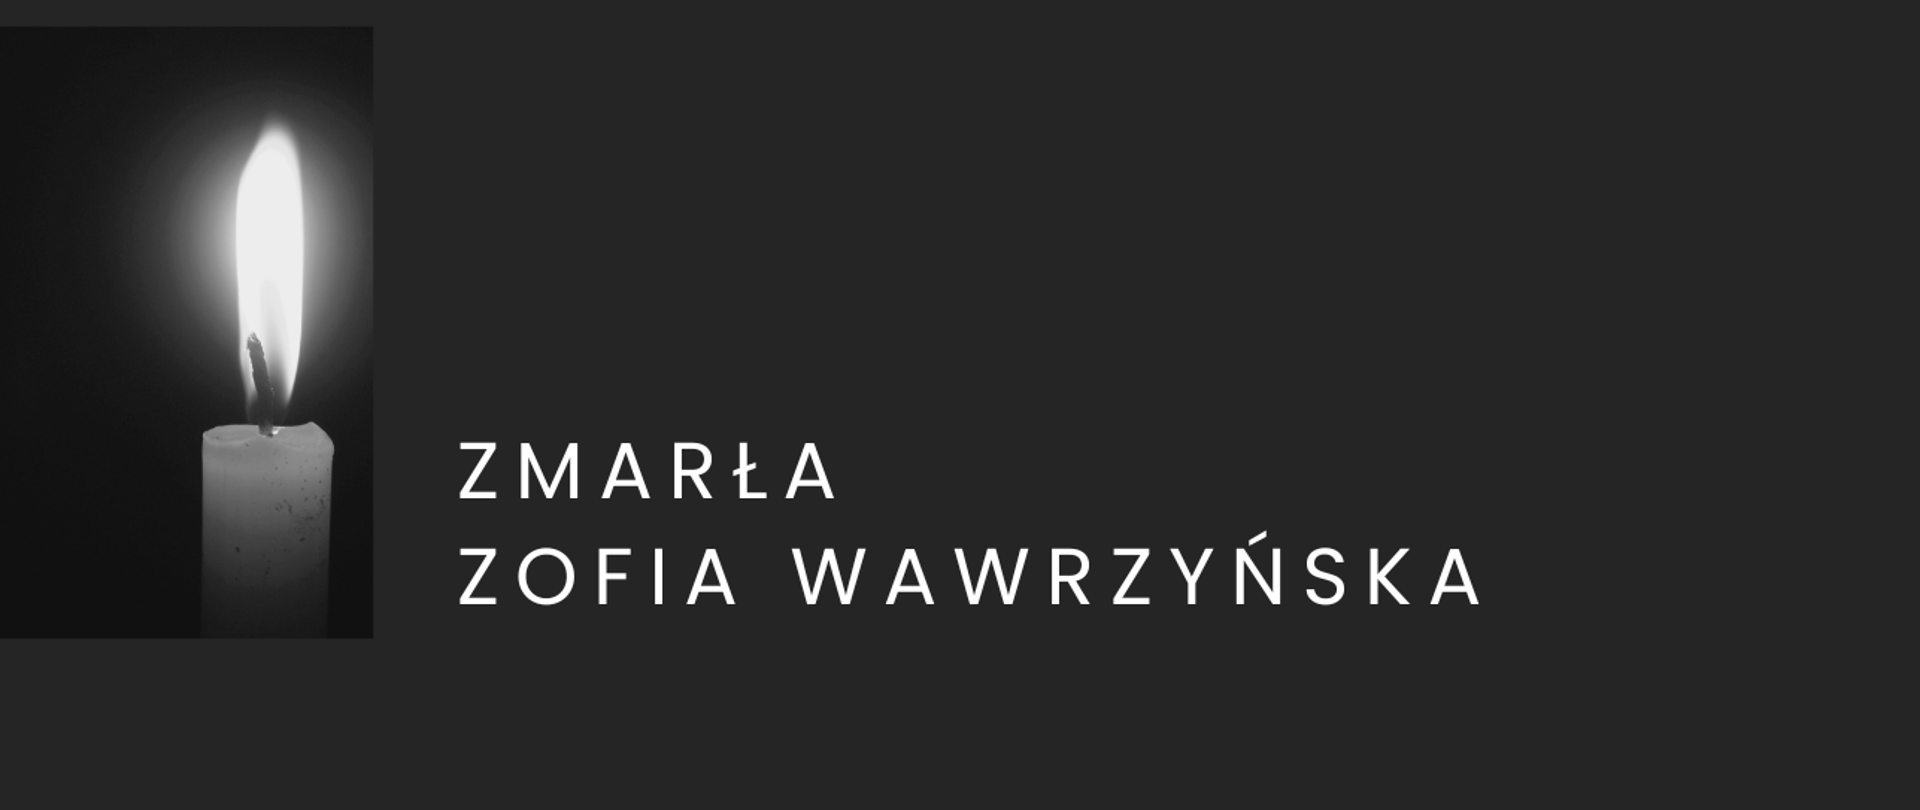 Baner żałobny - zmarła Zofia Wardzyńska, biały napis na czarnym tle, grafika z zapaloną świeczką